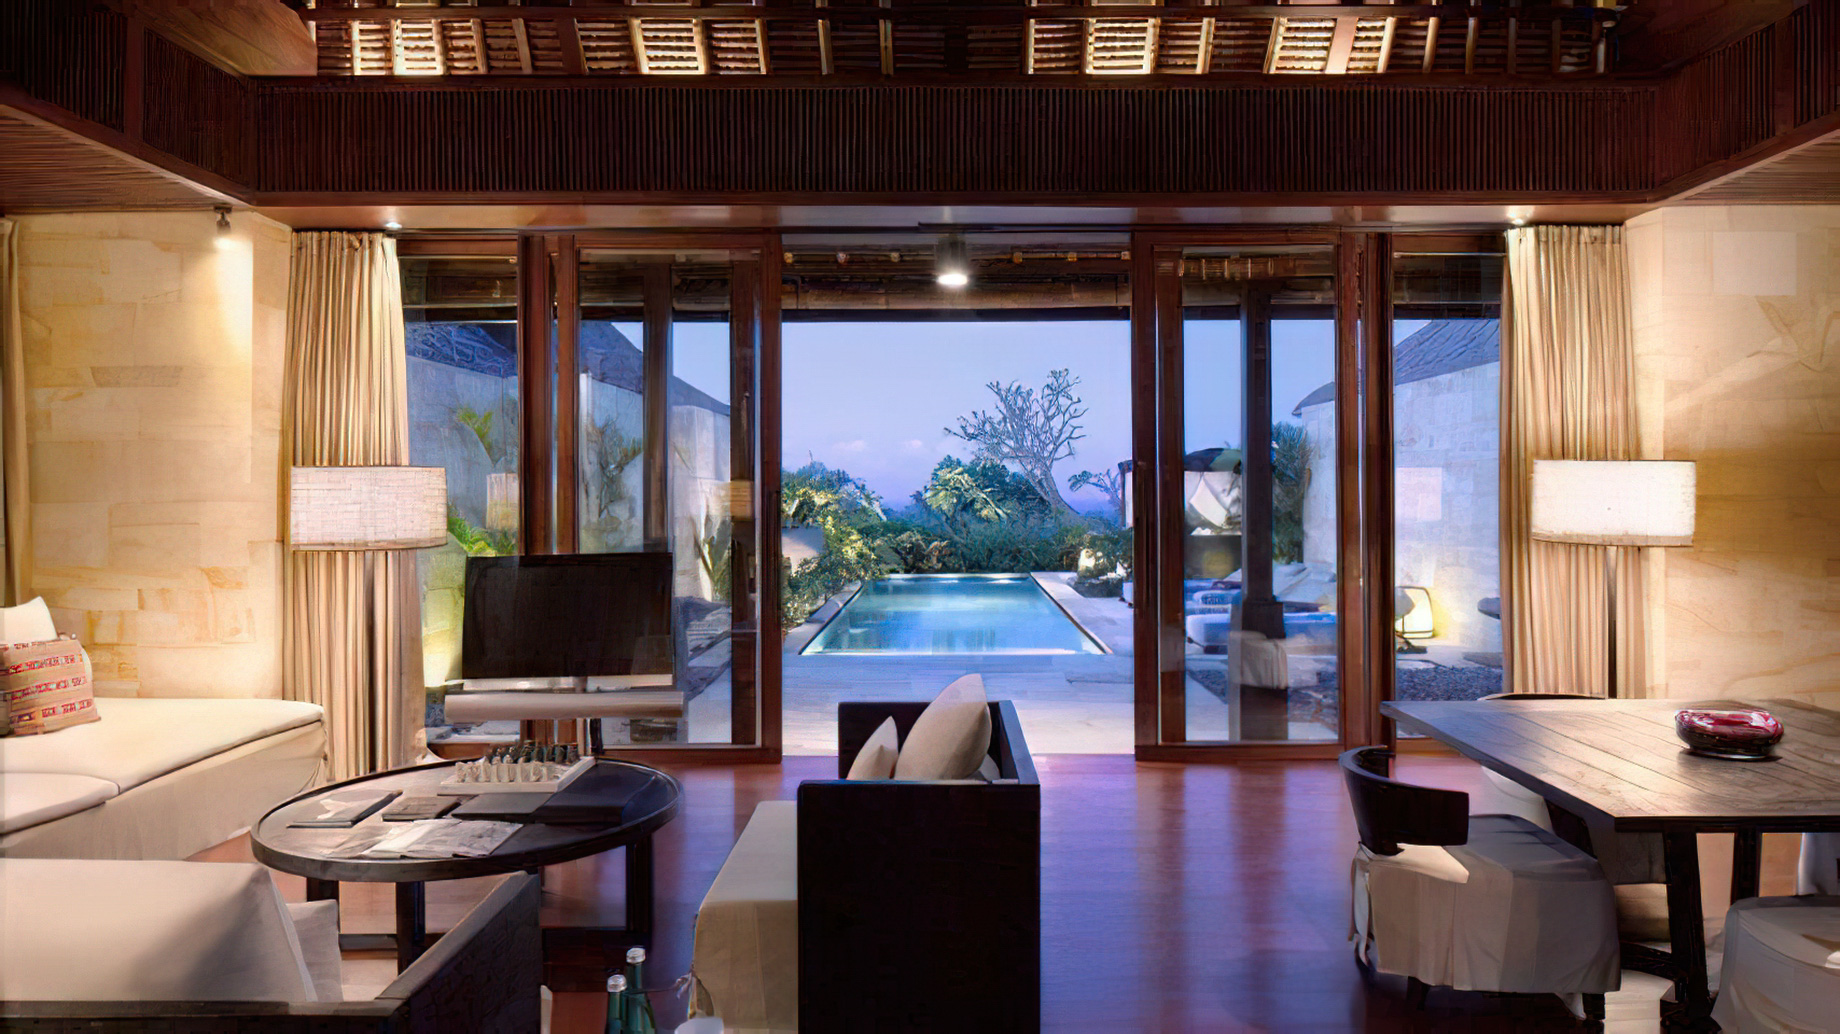 Bvlgari Resort Bali – Uluwatu, Bali, Indonesia – Ocean Cliff Villa Living Room Ocean View Dusk